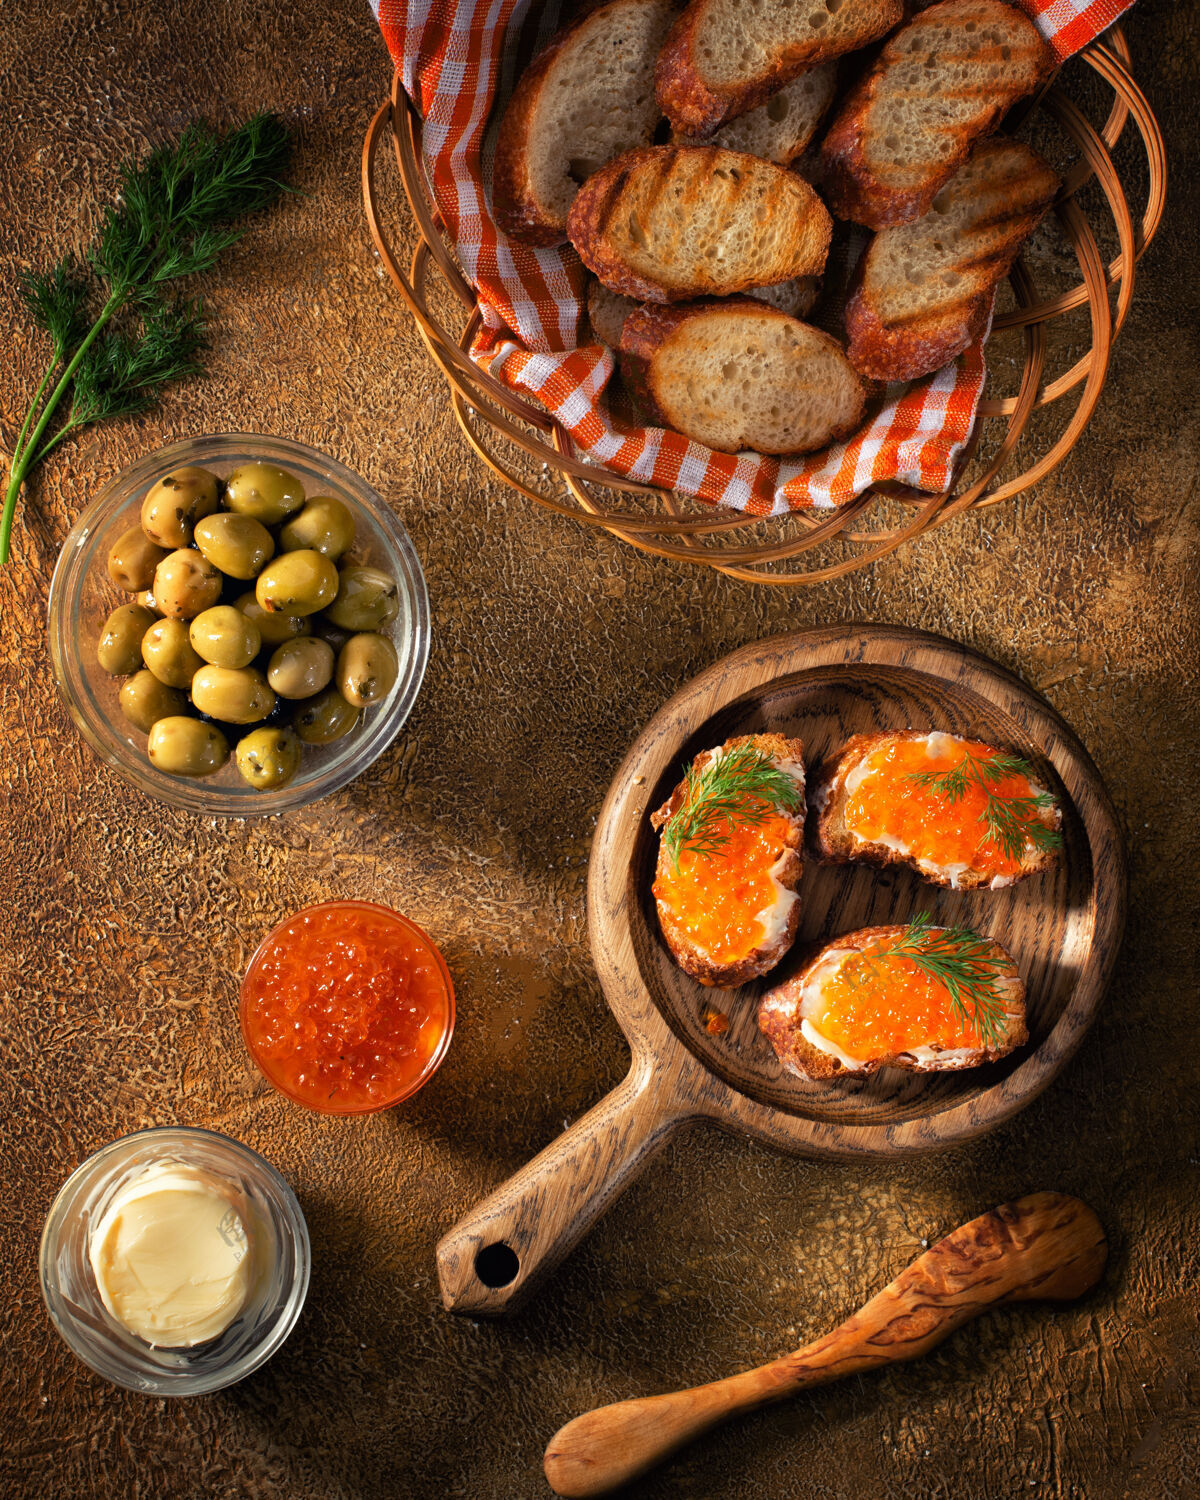 产品把涂有红鱼子酱的面包片放在桌子上 放上橄榄和橄榄黄油面包店食物概念或横幅照片美食饮食鱼子酱